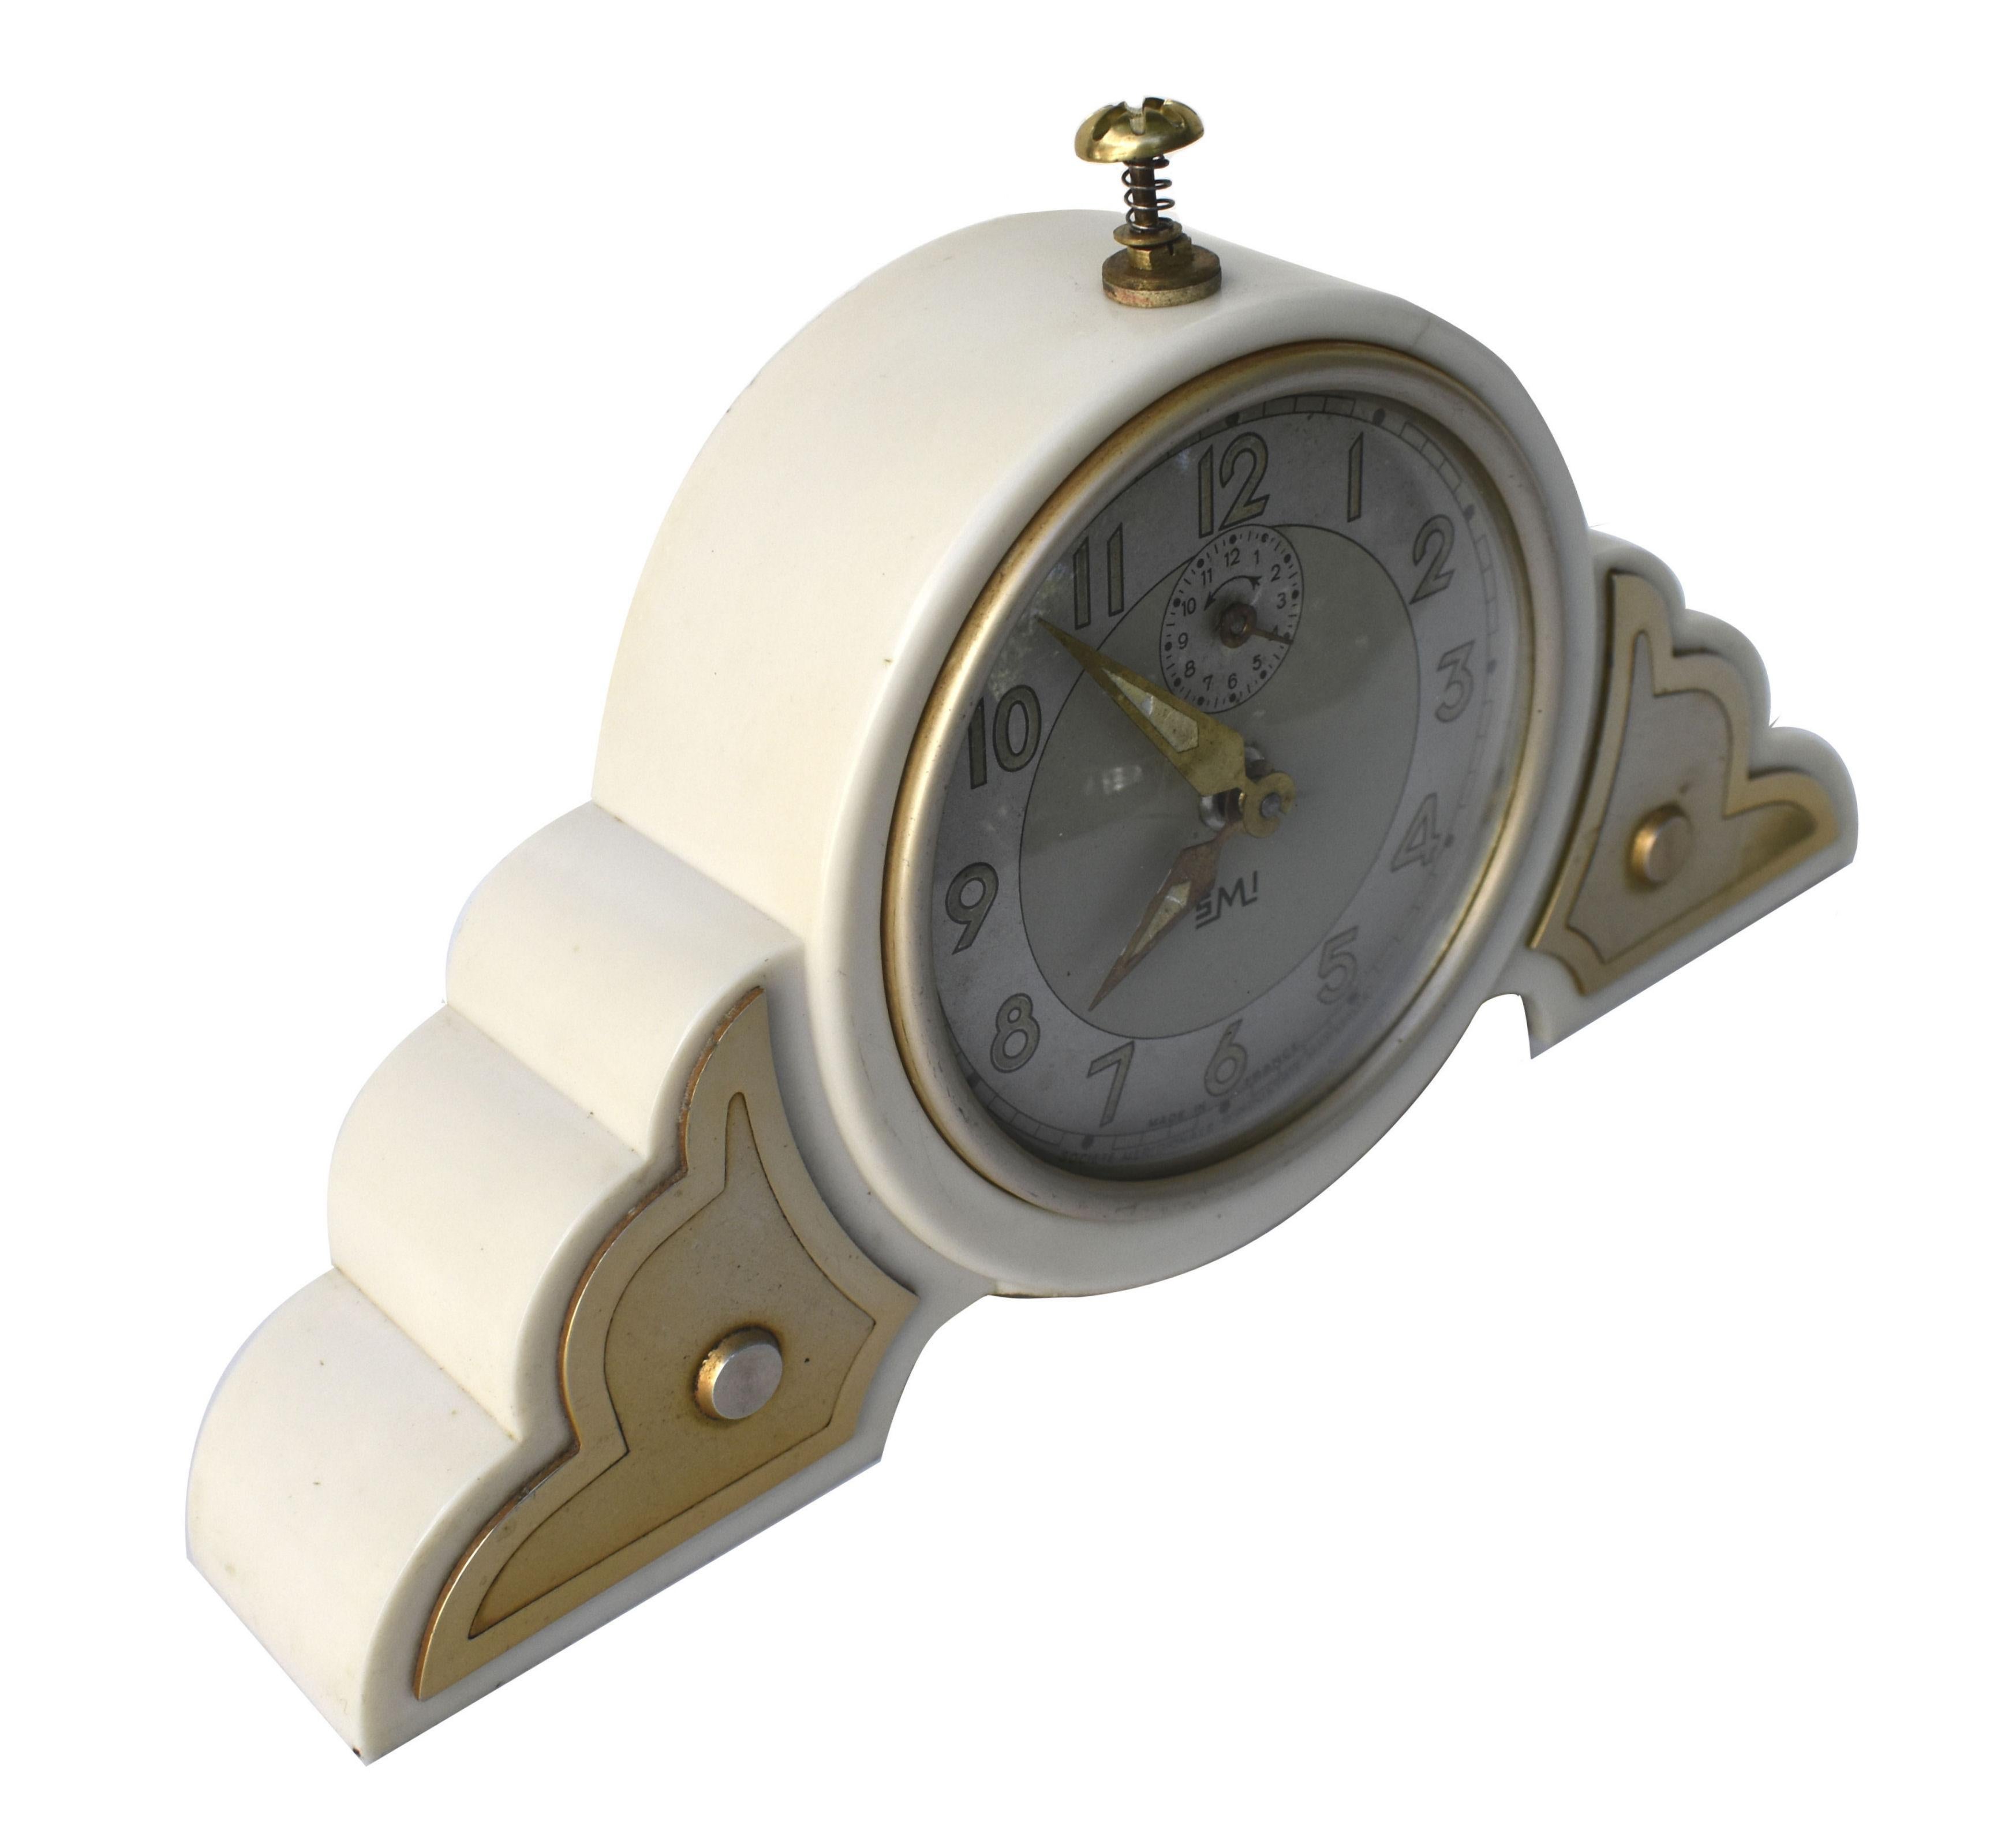 Très belle horloge en bakélite ivoire Art déco des années 1930. Originaire de France, cette magnifique horloge est l'exemple même de l'Art déco avec son fabuleux boîtier en forme de nuage. L'horloge fonctionne bien et reste à l'heure, tout comme